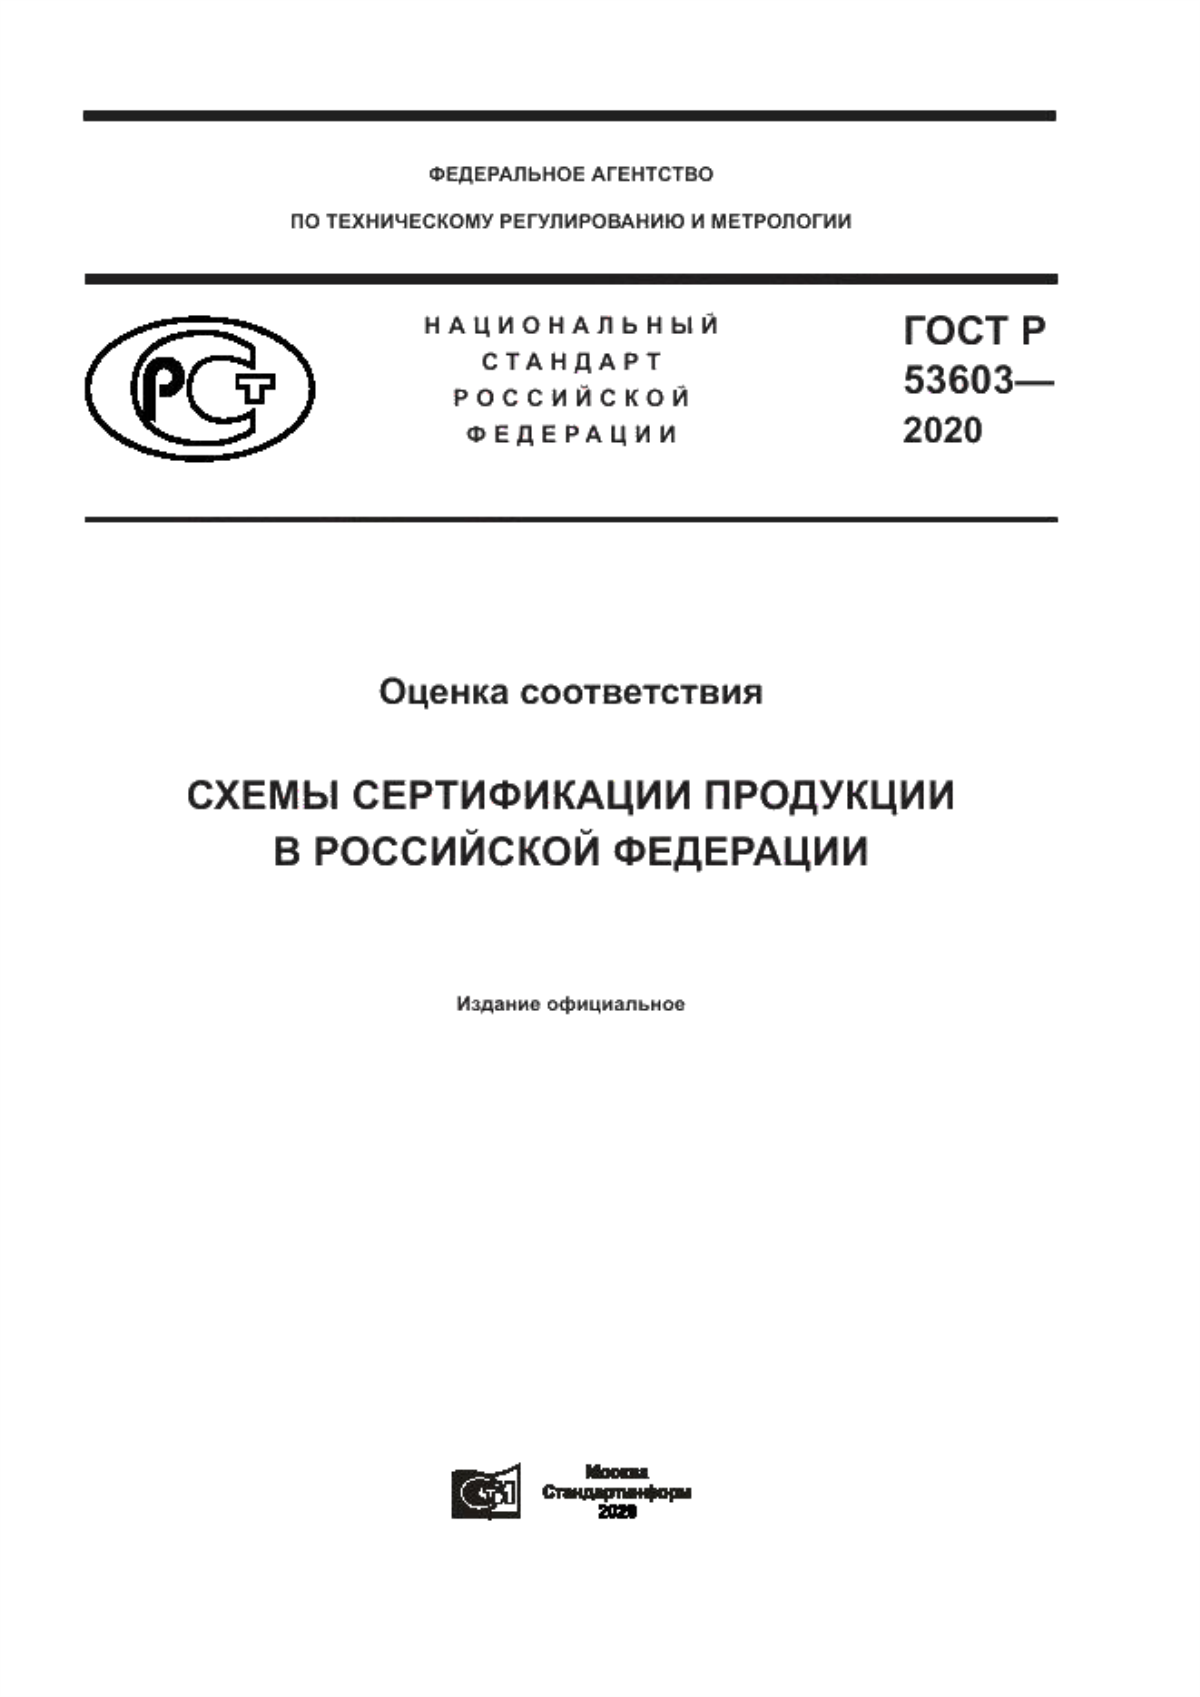 ГОСТ Р 53603-2020 Оценка соответствия. Схемы сертификации продукции в Российской Федерации